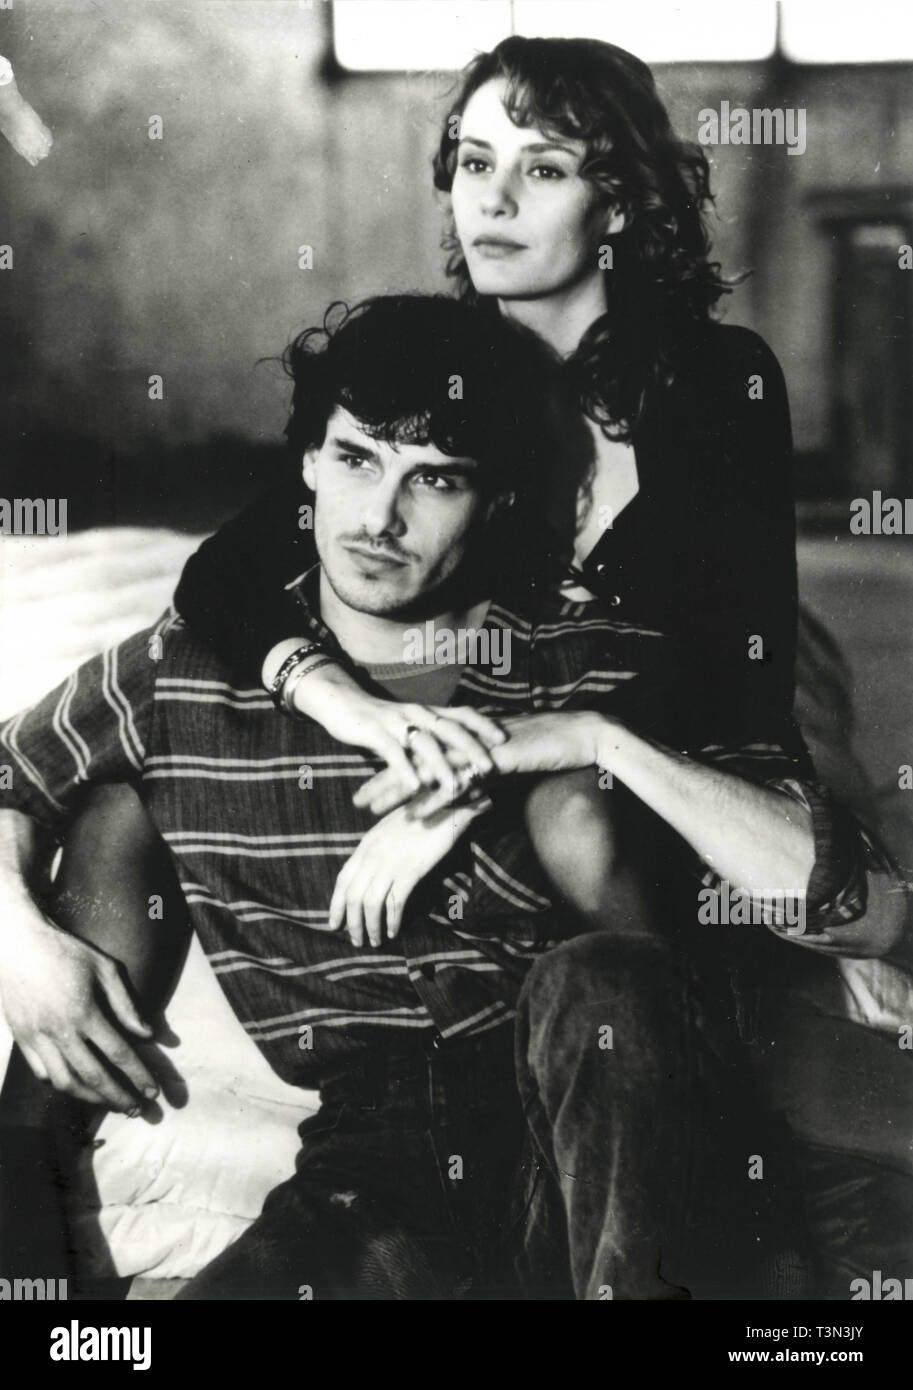 Italian actors Antonella Ponziani and Stefano Dionisi in the movie Verso Sud, 1990s Stock Photo